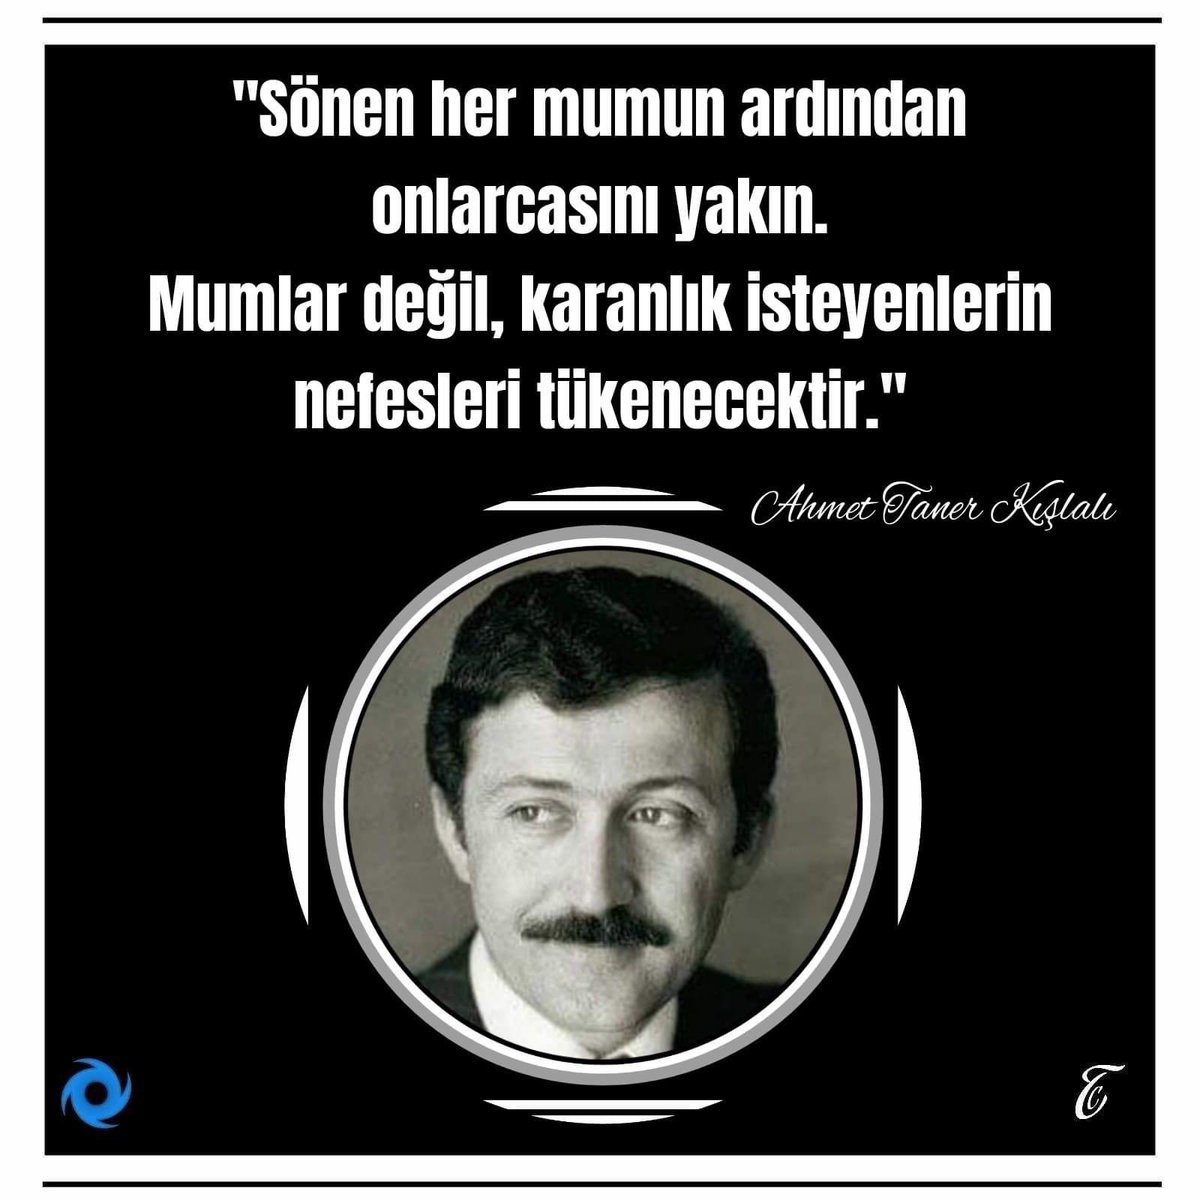 #AhmetTanerKışlalı
21 Ekim 1999 kapkara gün 😔

Katledilişinin 24. yıl dönümünde 
Ahmet Taner Kışlalı'yı, saygı sevgi  ve rahmetle anıyorum.😔🙏

#RuhunŞadOlsunGüzelİnsan 🙏